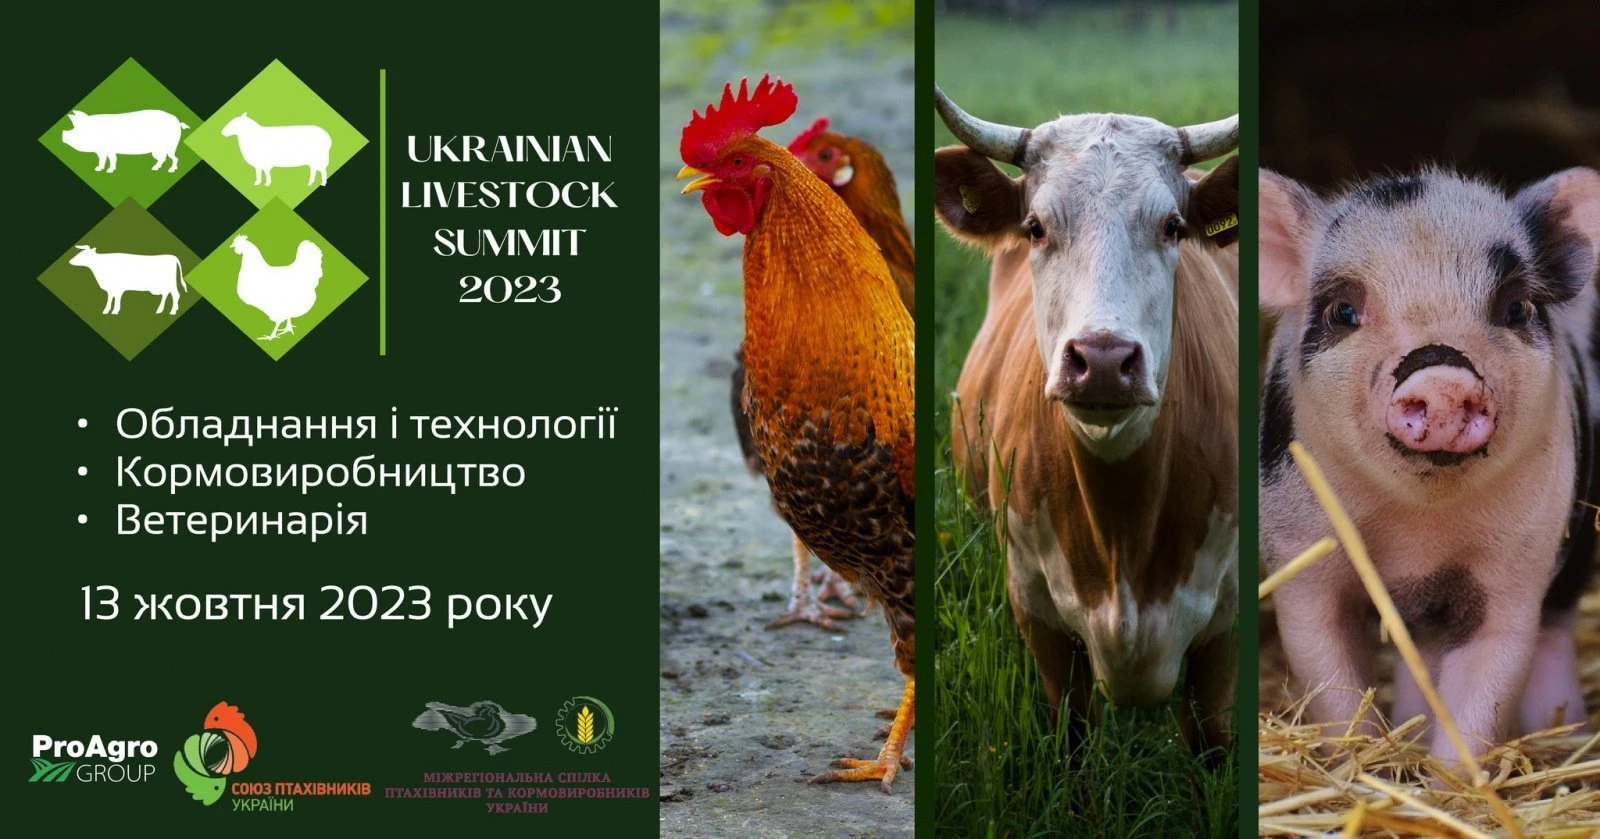  Ukrainian Livestock Summit 2023